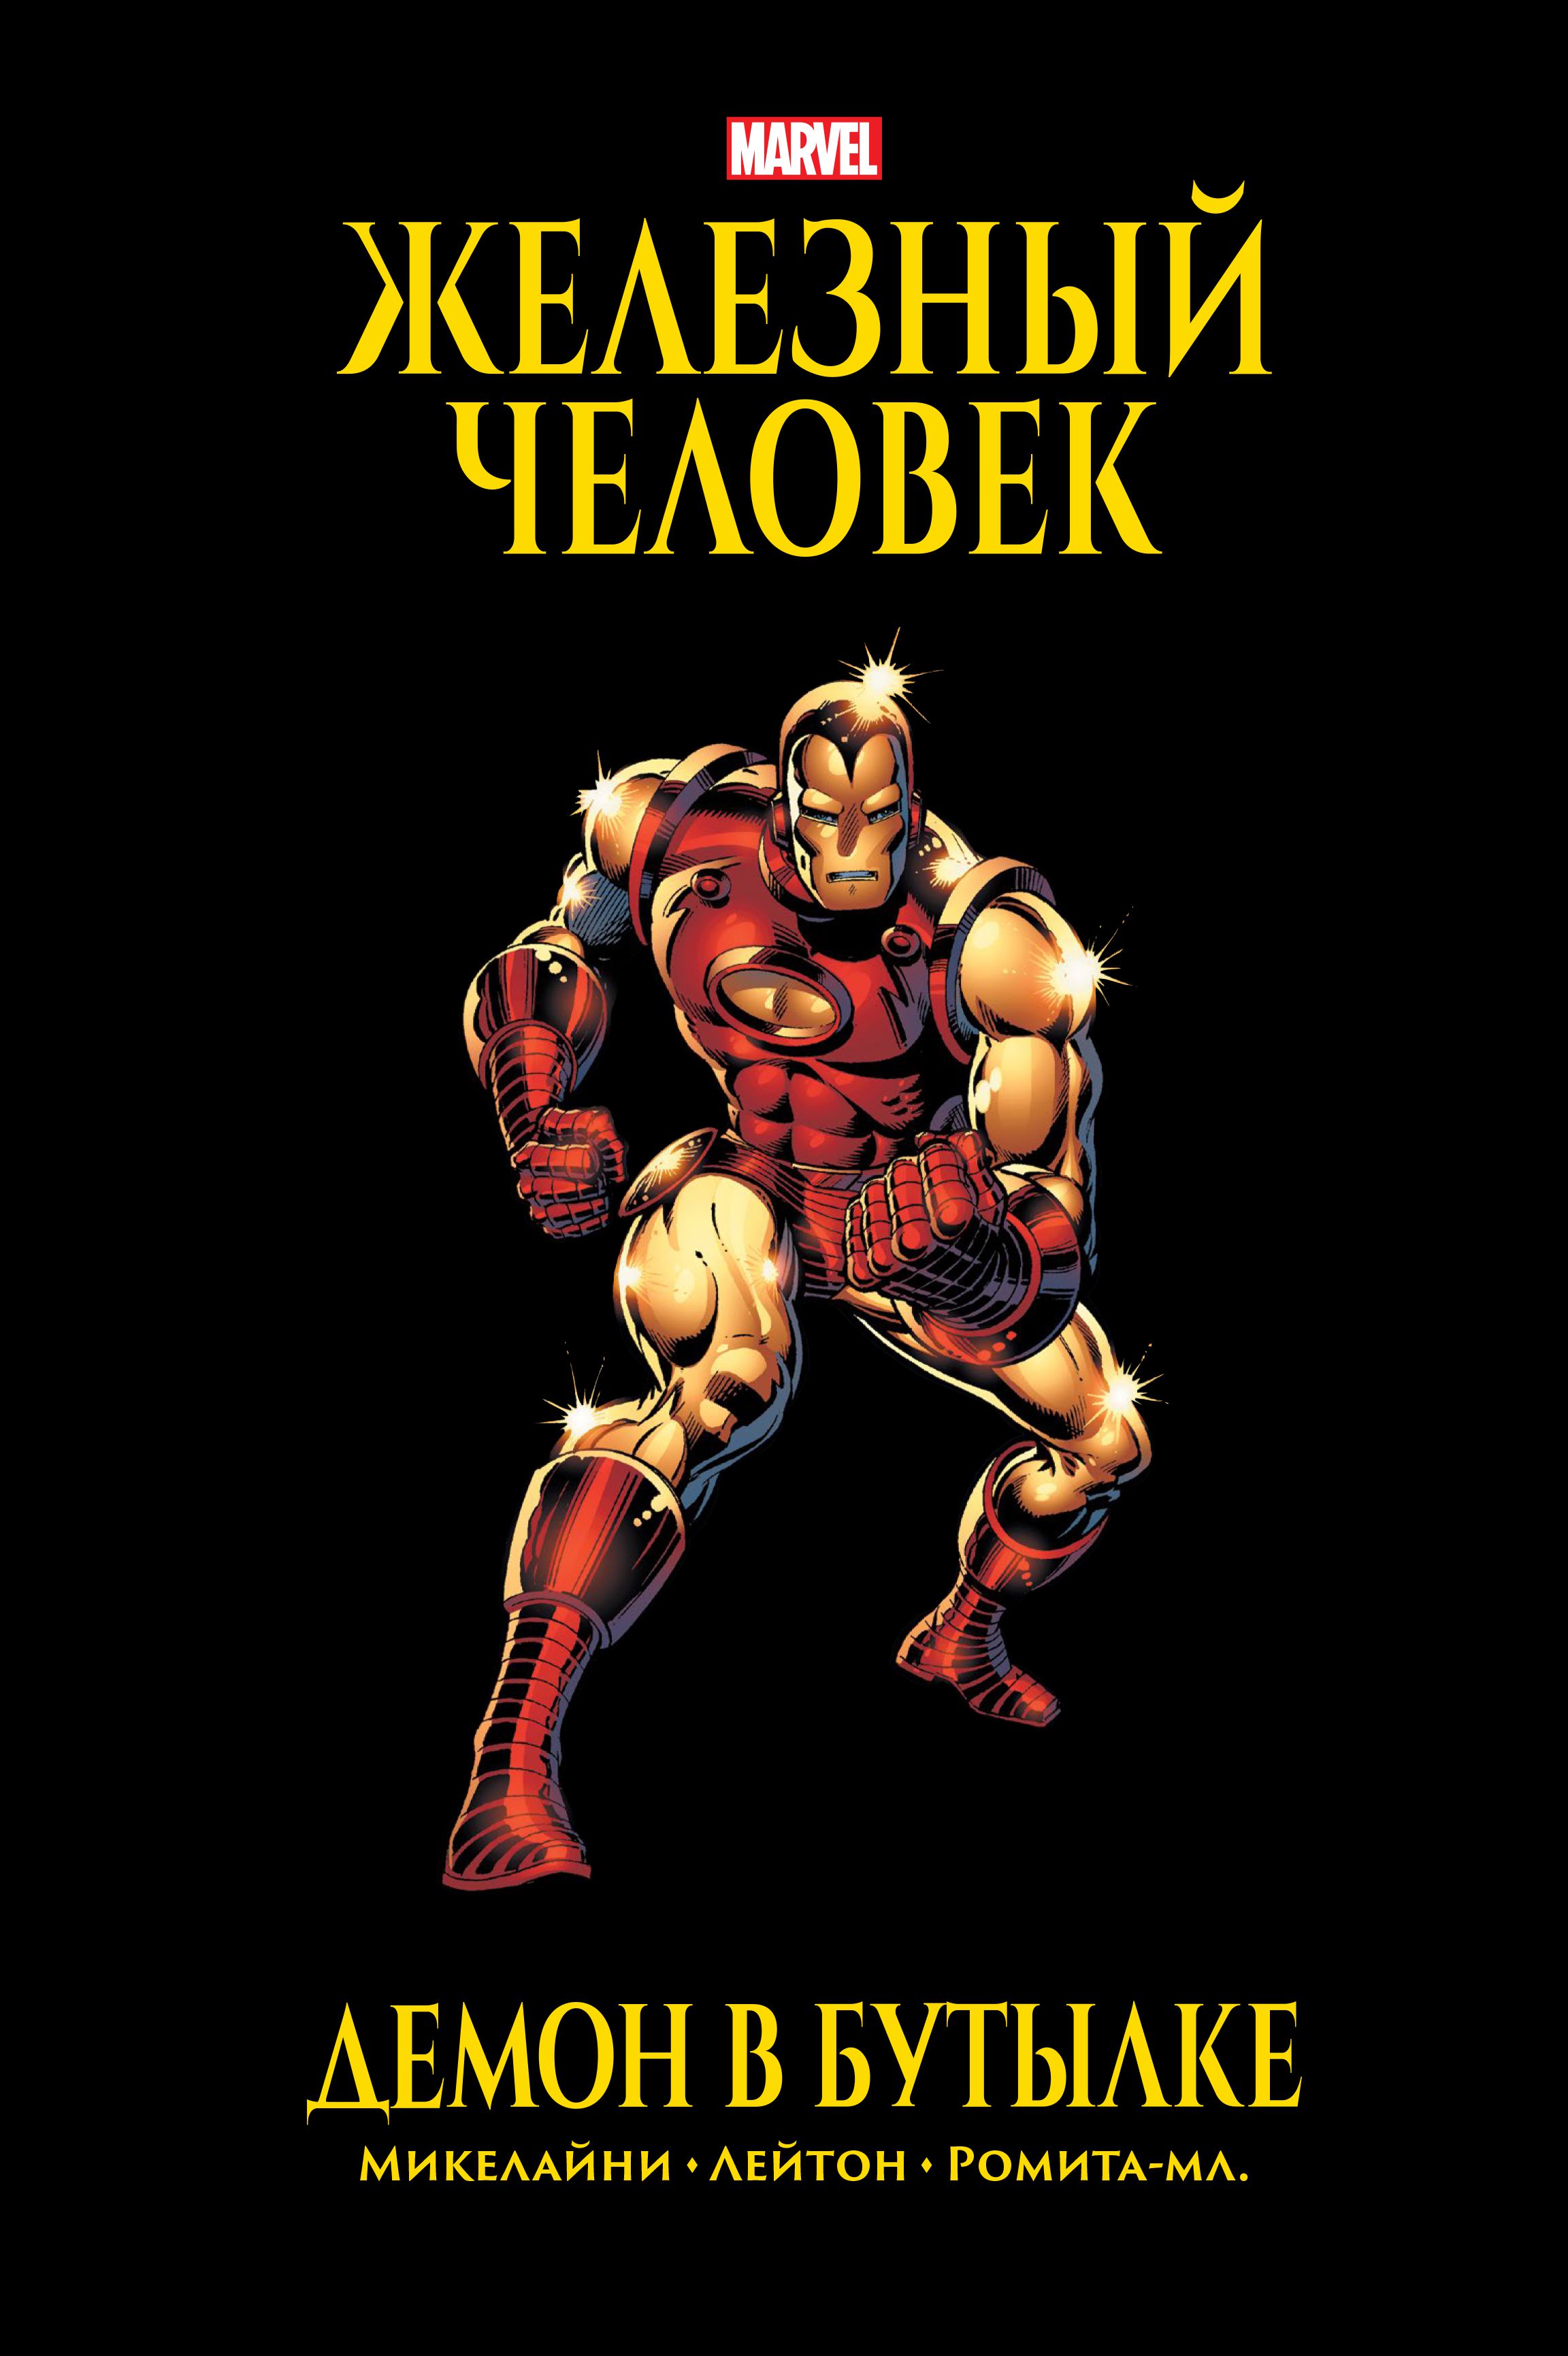 Комикс Железный Человек: Демон в бутылке. Золотая коллекция Marvel от 1С Интерес